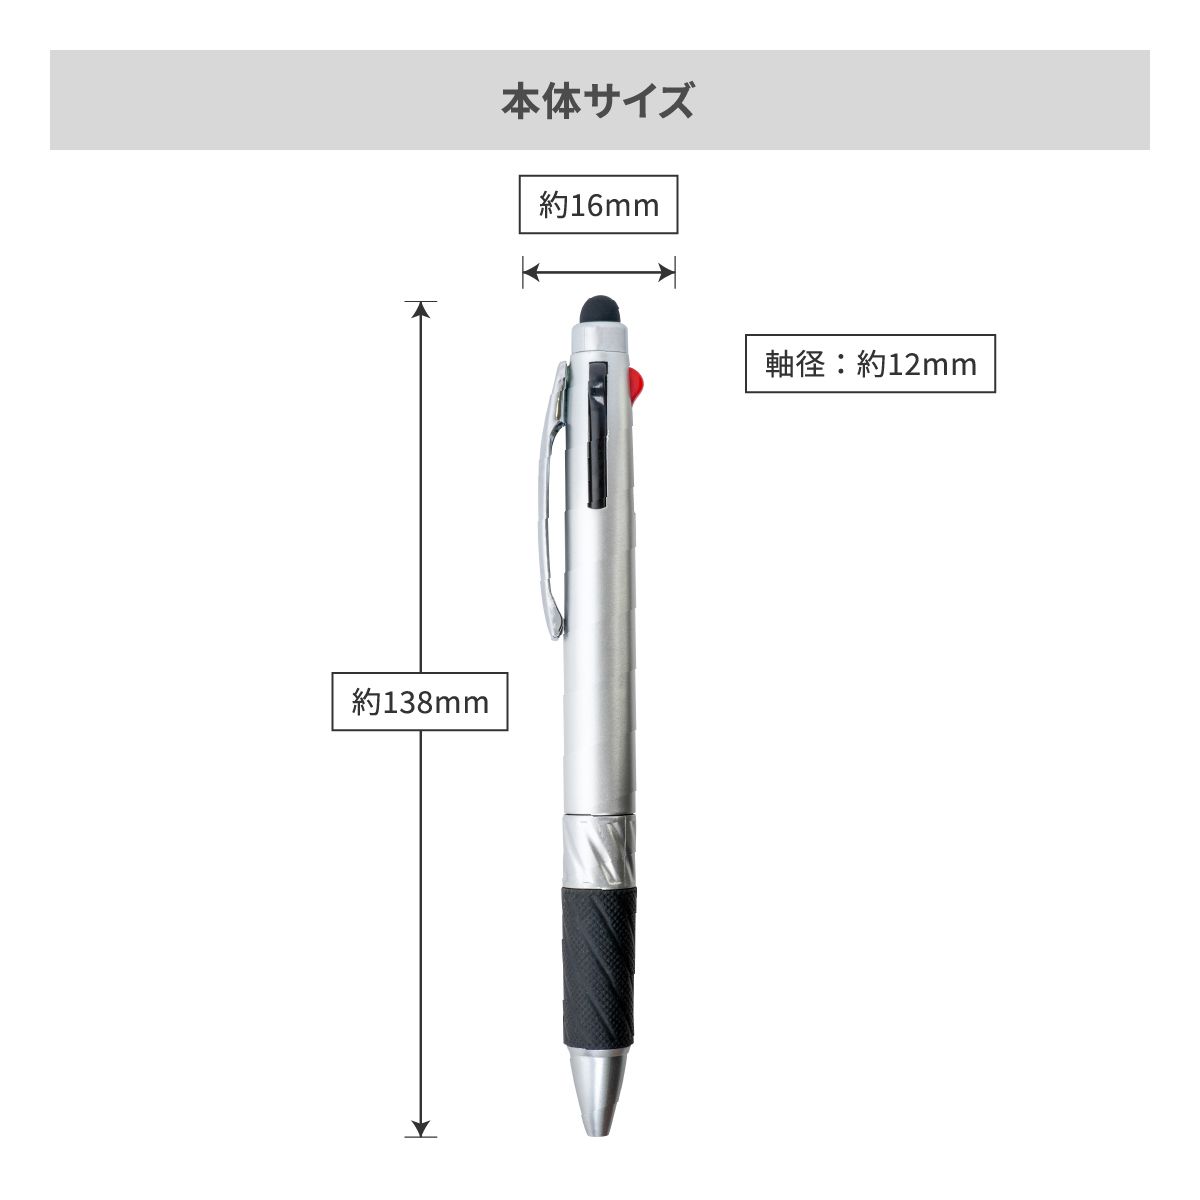 タッチペン付3色ボールペン【多機能ペン / パッド印刷】 画像6